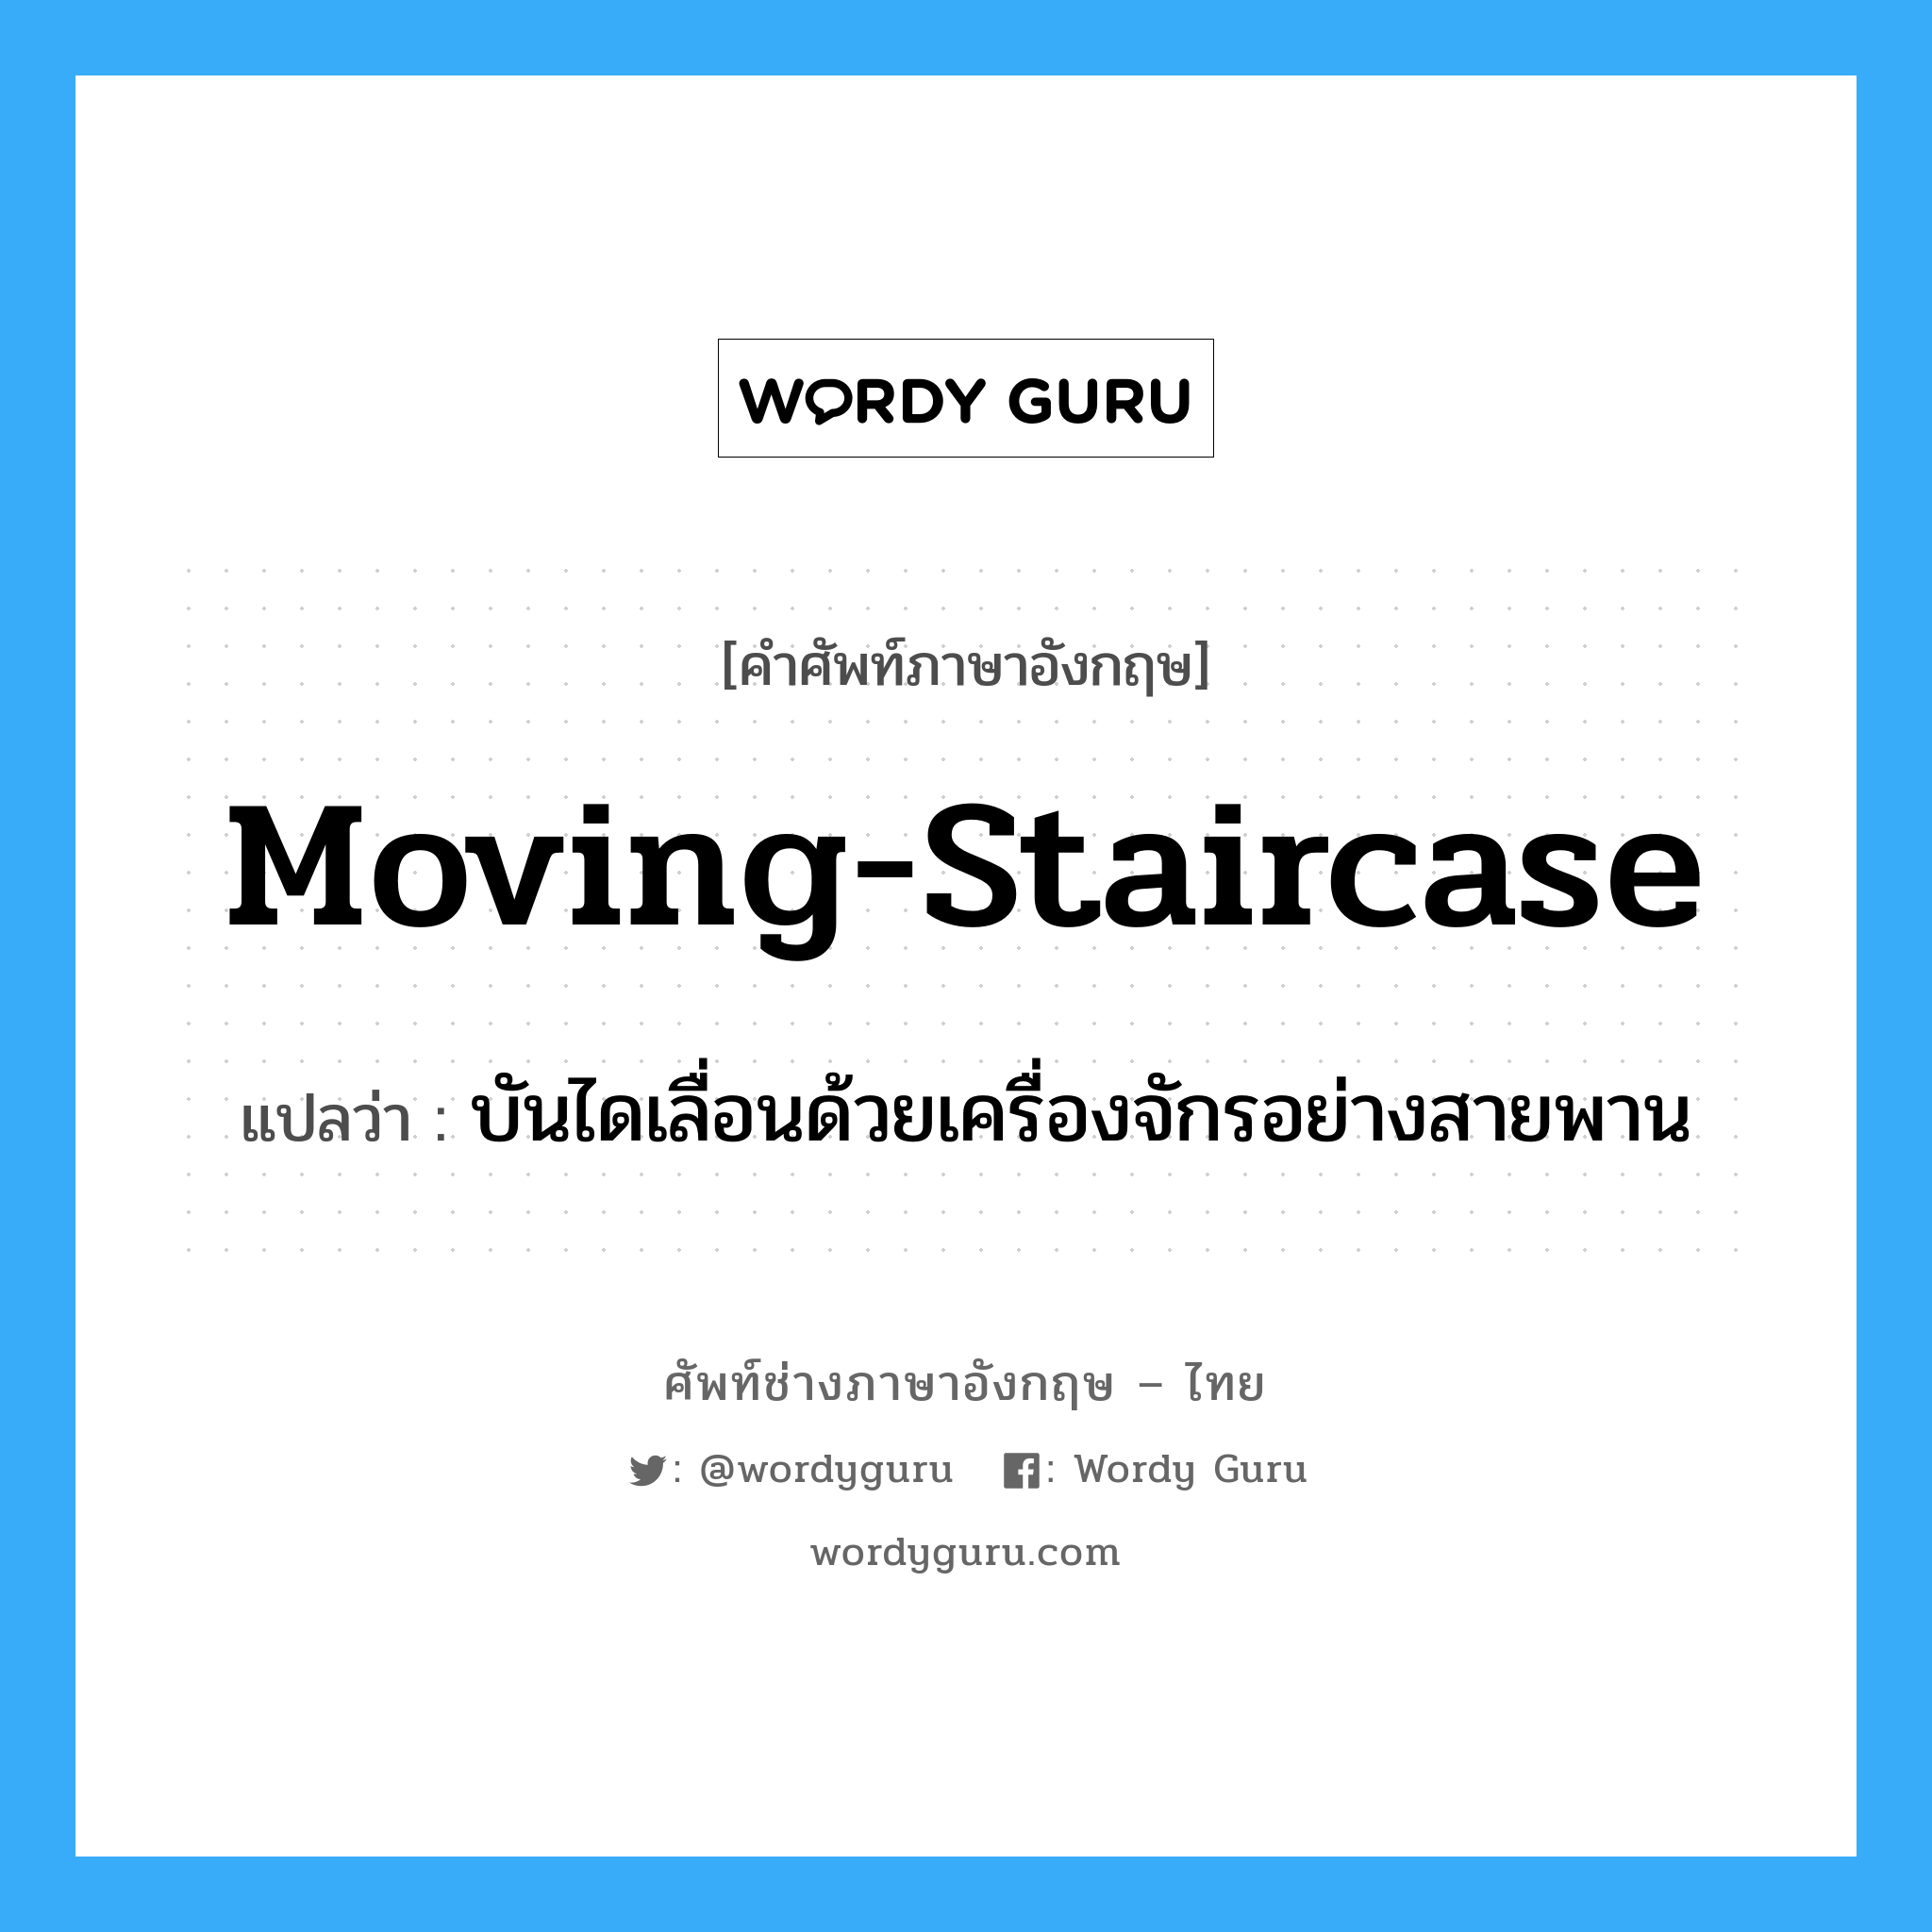 moving-staircase แปลว่า?, คำศัพท์ช่างภาษาอังกฤษ - ไทย moving-staircase คำศัพท์ภาษาอังกฤษ moving-staircase แปลว่า บันไดเลื่อนด้วยเครื่องจักรอย่างสายพาน